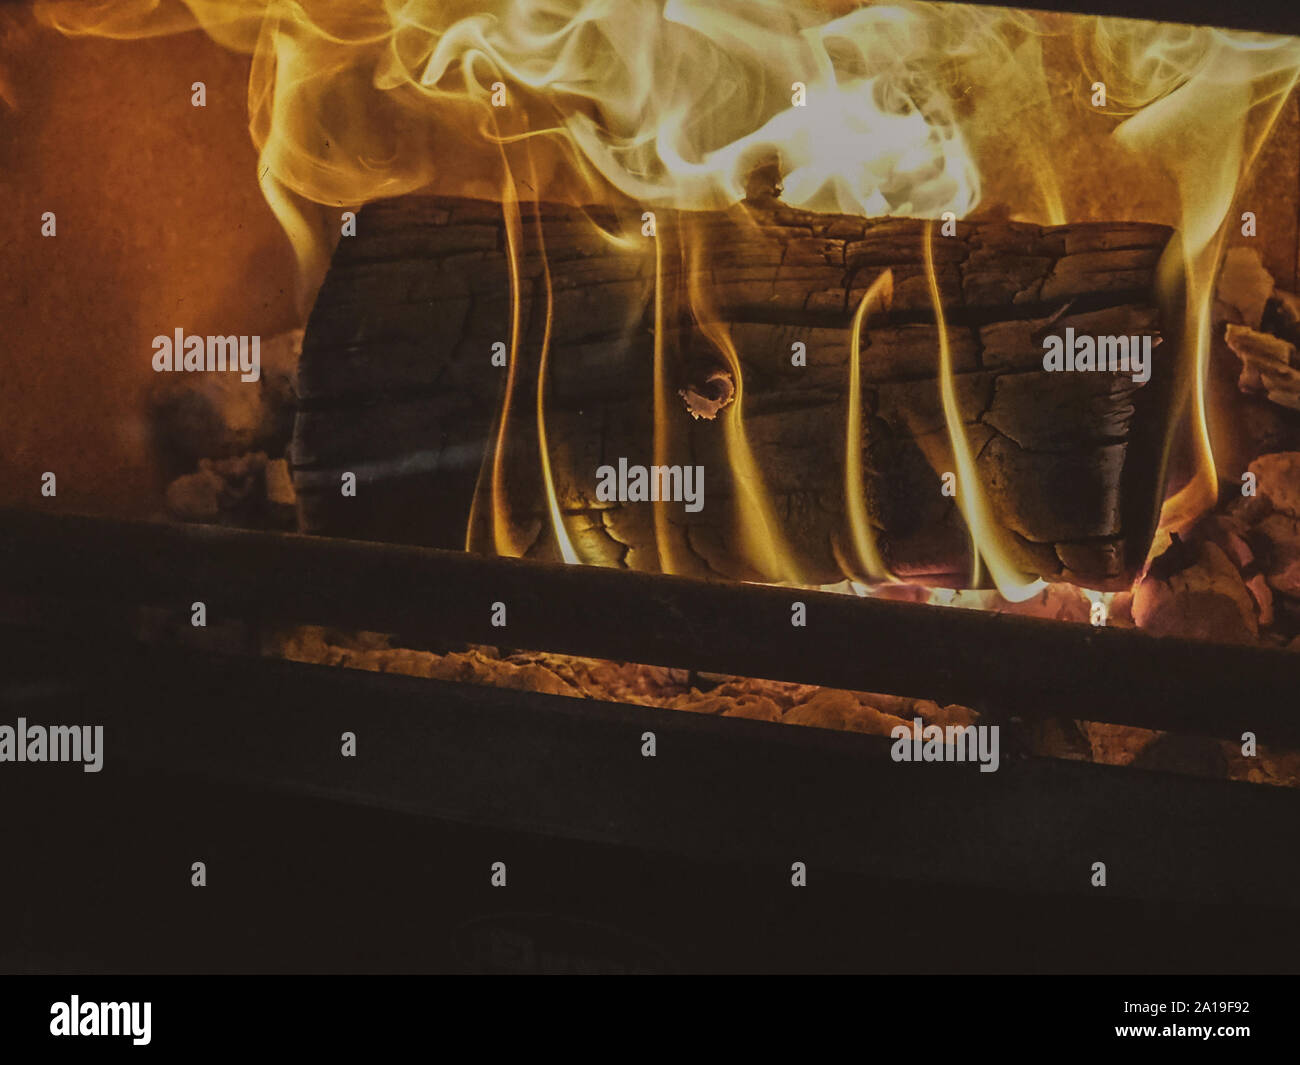 Log burning inside fireplace at Christmas Stock Photo